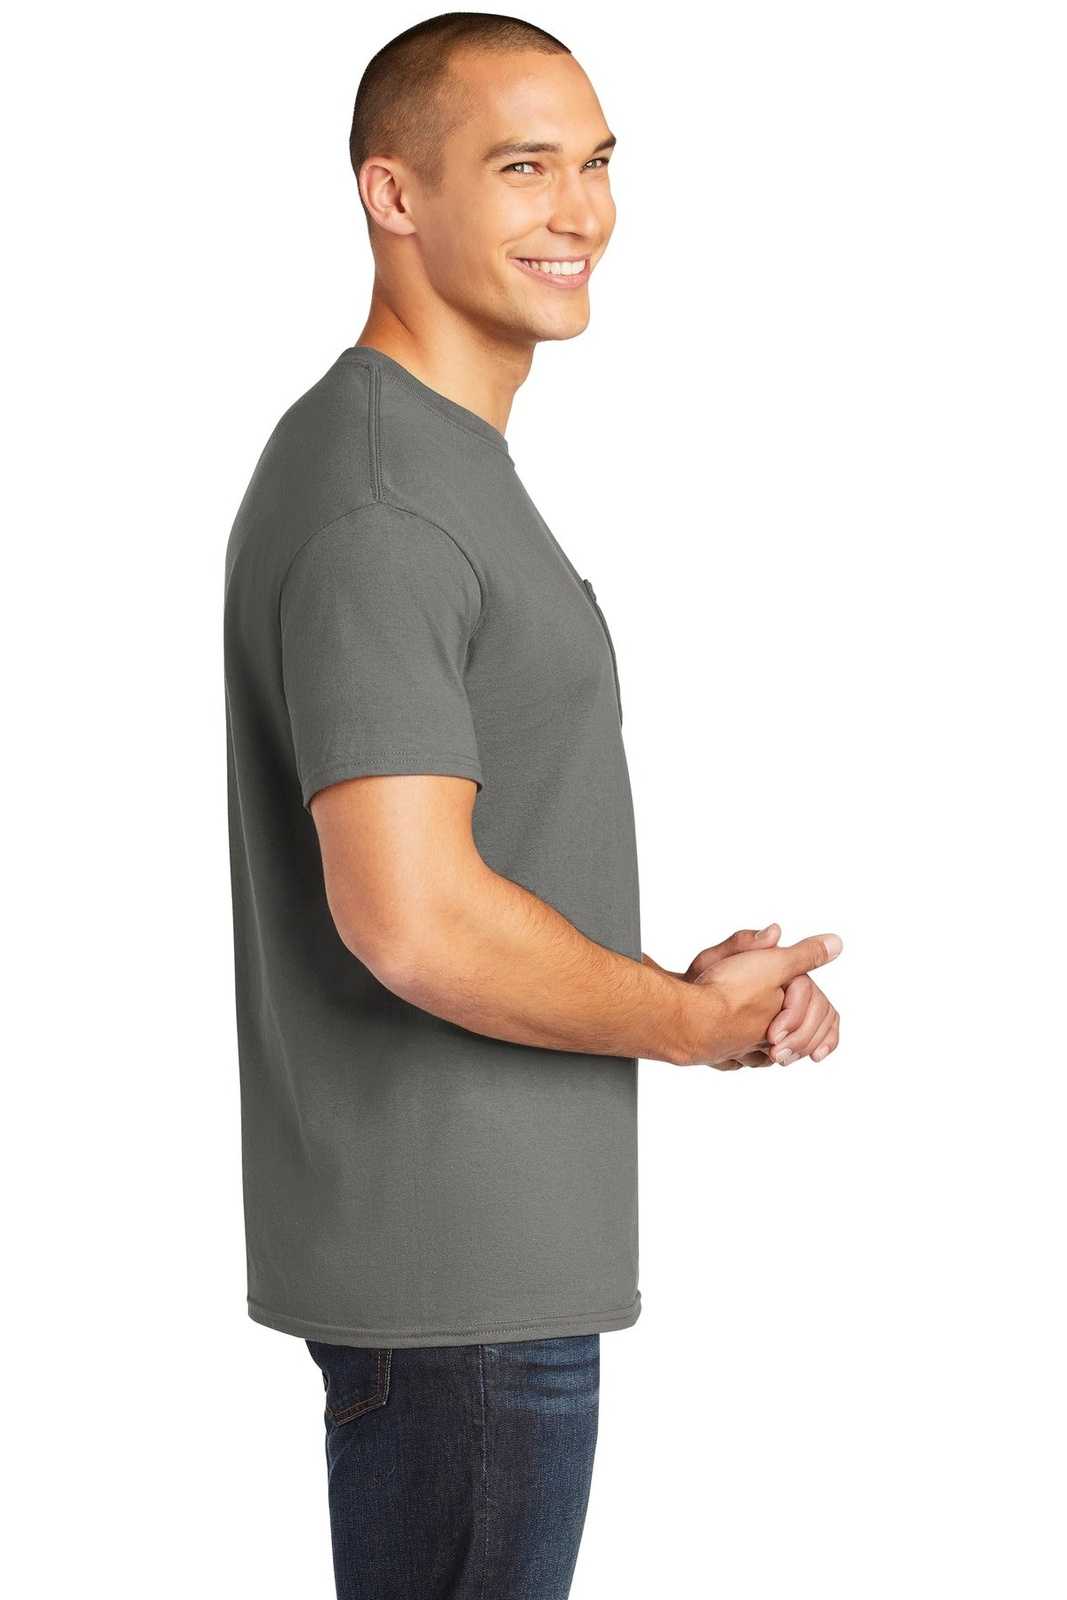 Gildan 5300 Heavy Cotton 100% Cotton Pocket T-Shirt - Charcoal - HIT a Double